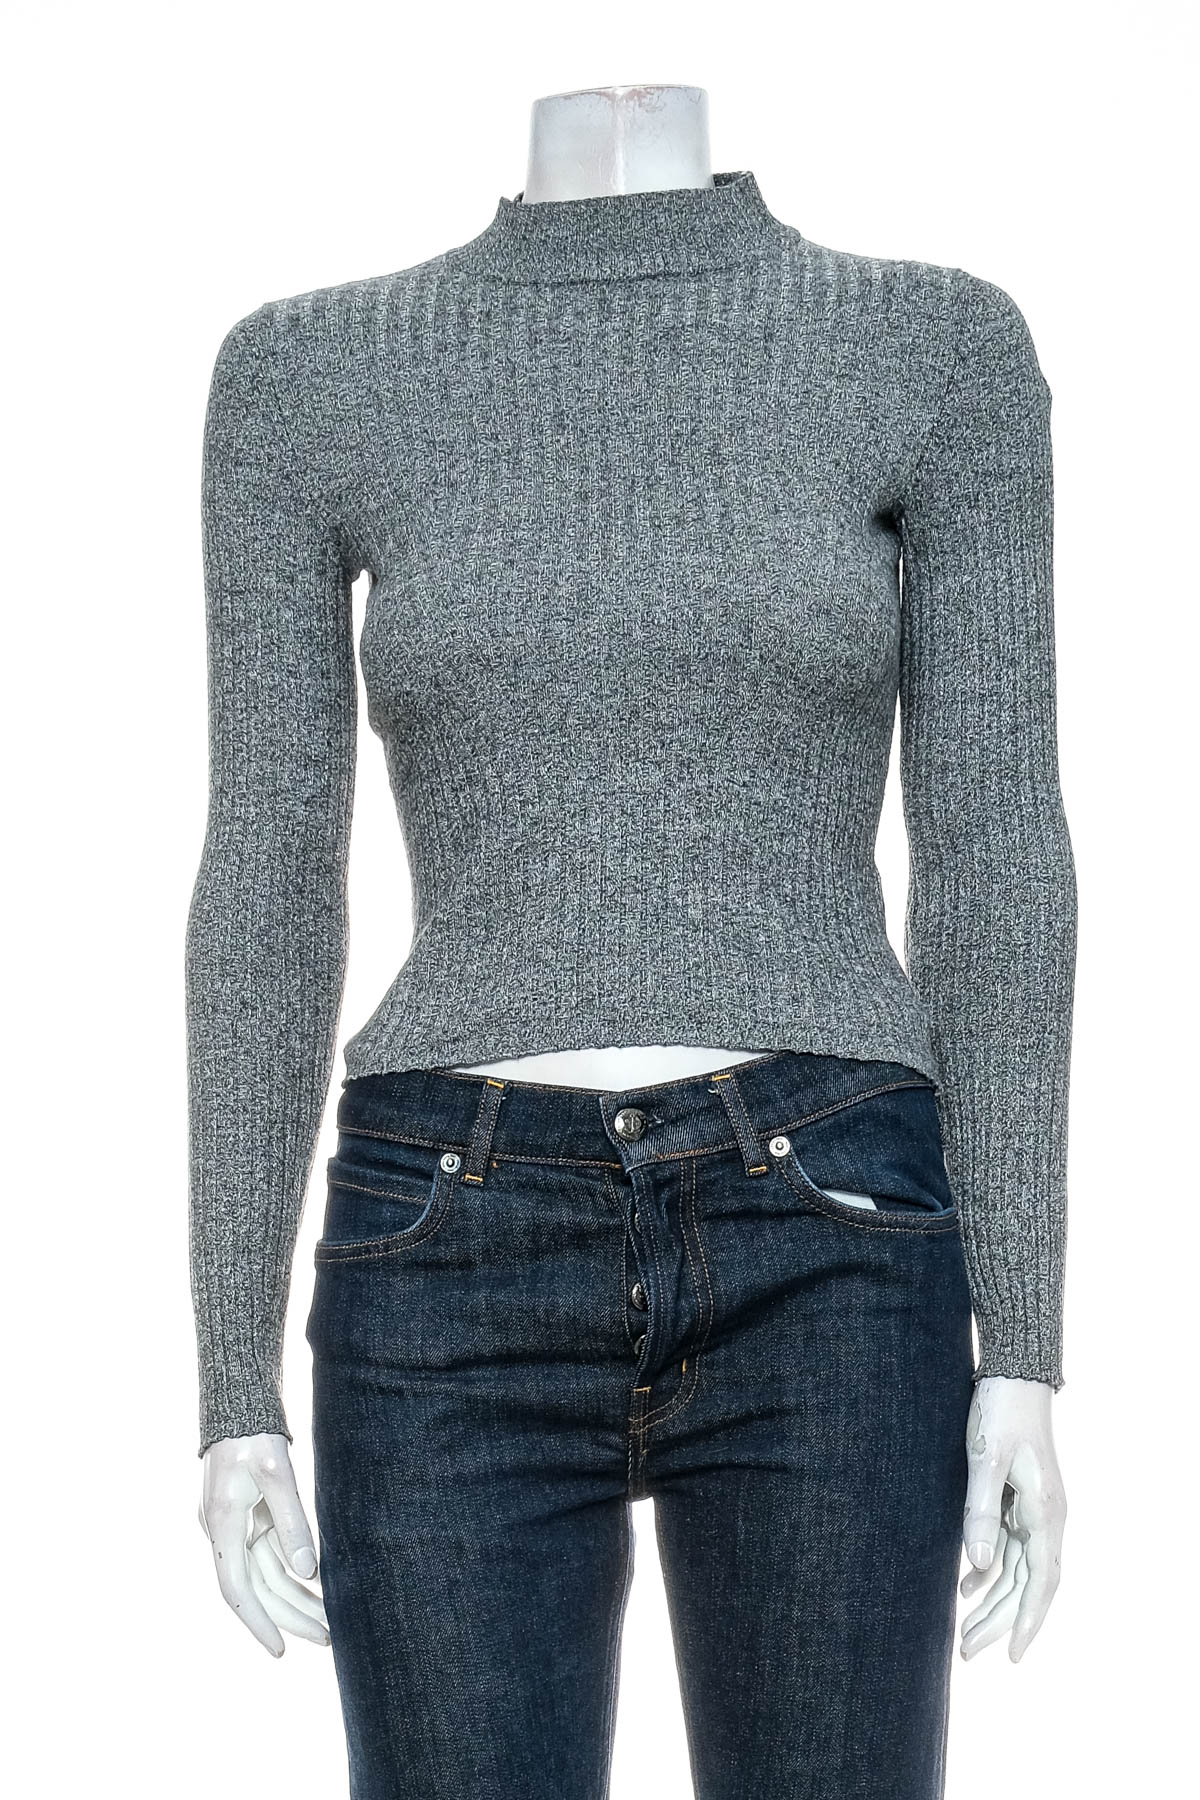 Women's sweater - Bershka - 0